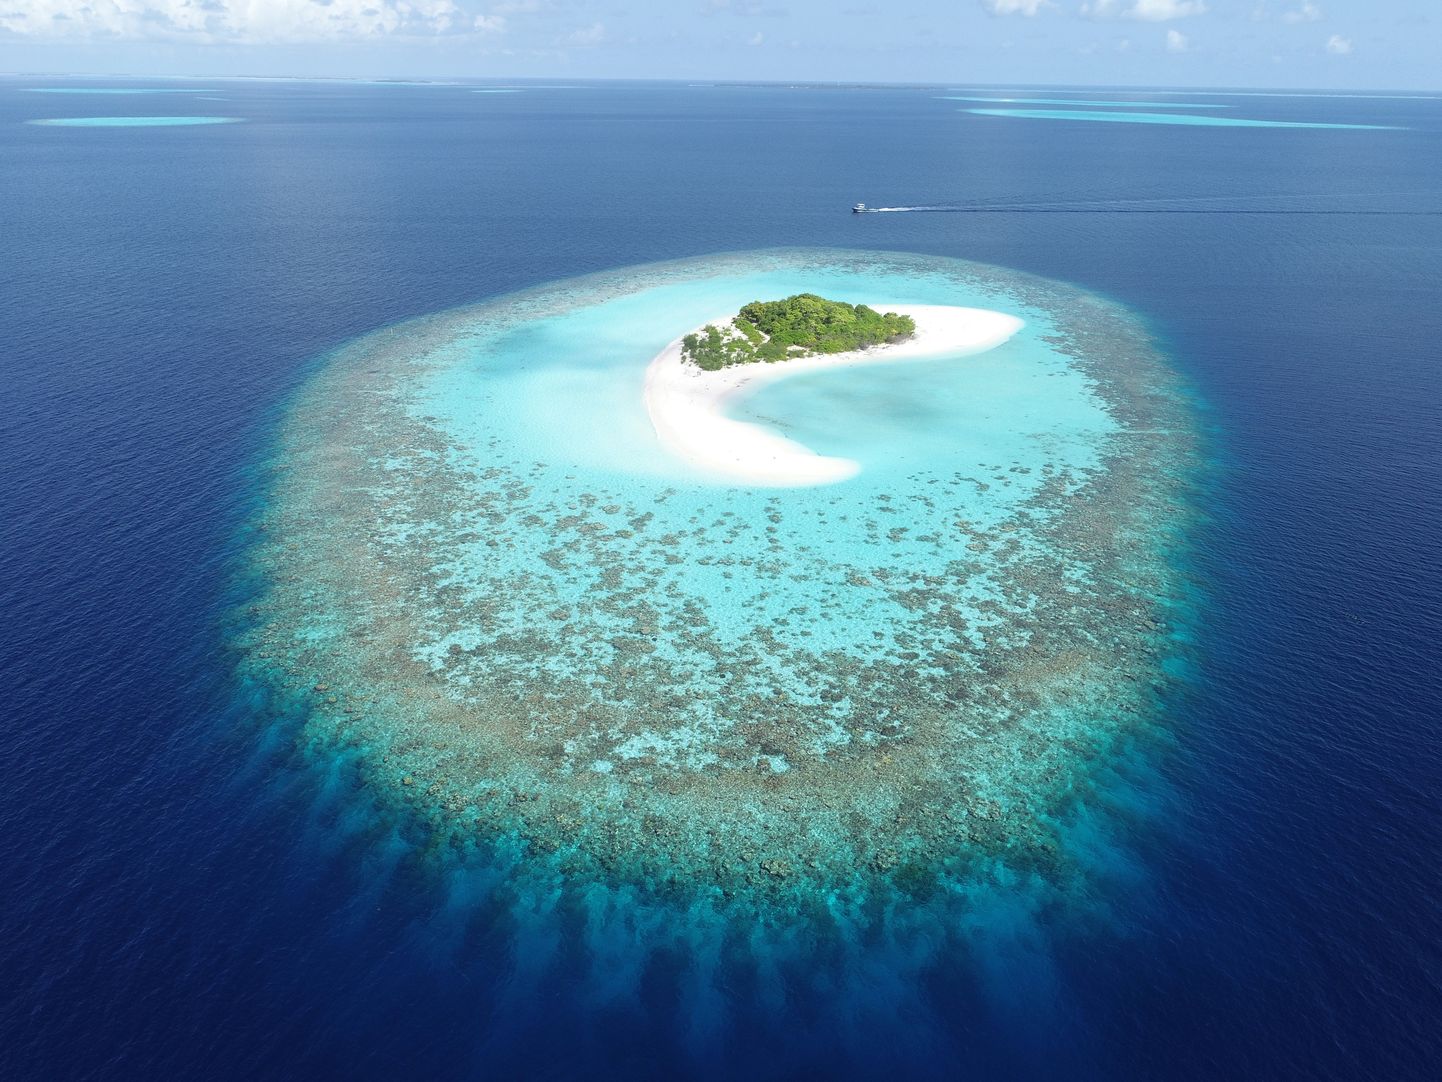 Maldiividel on oht merevee tõusust tõsiselt kannatada saada. Esialgu on paradiislik saarestik aga maailma rikastele mõnusaks ajaveetmispaigaks.